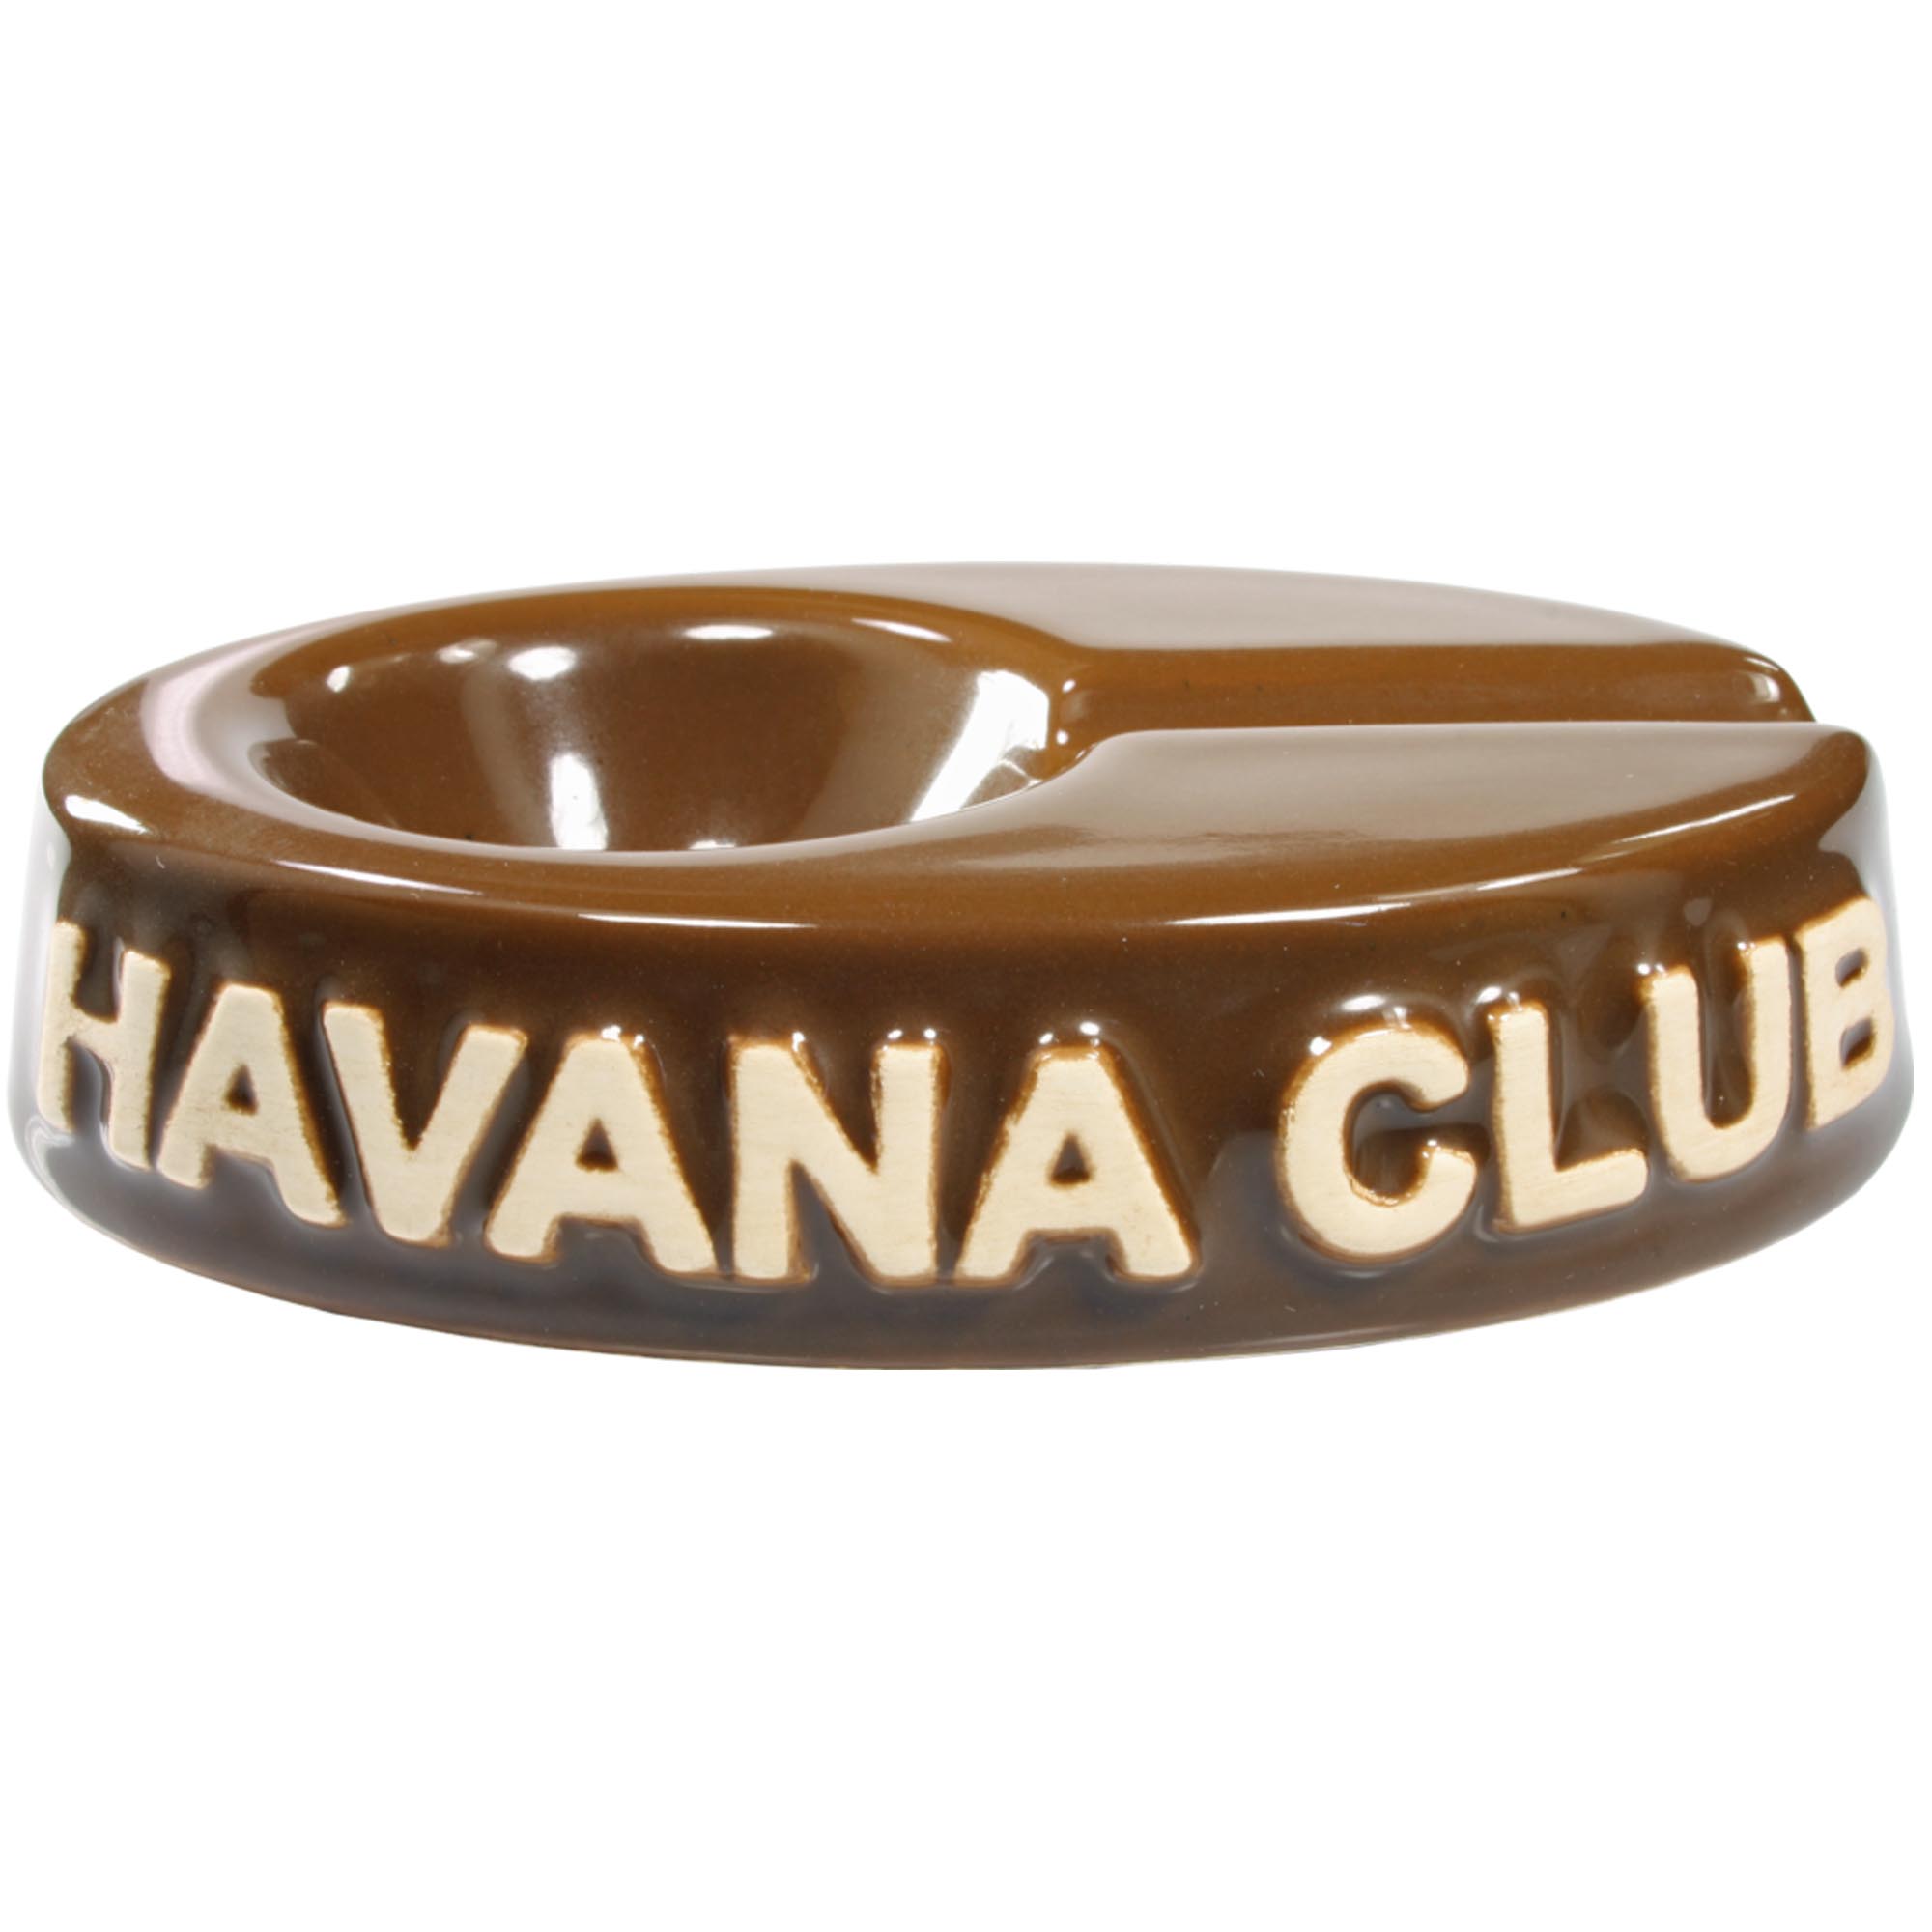 Club Havana Chico Braun Ascher